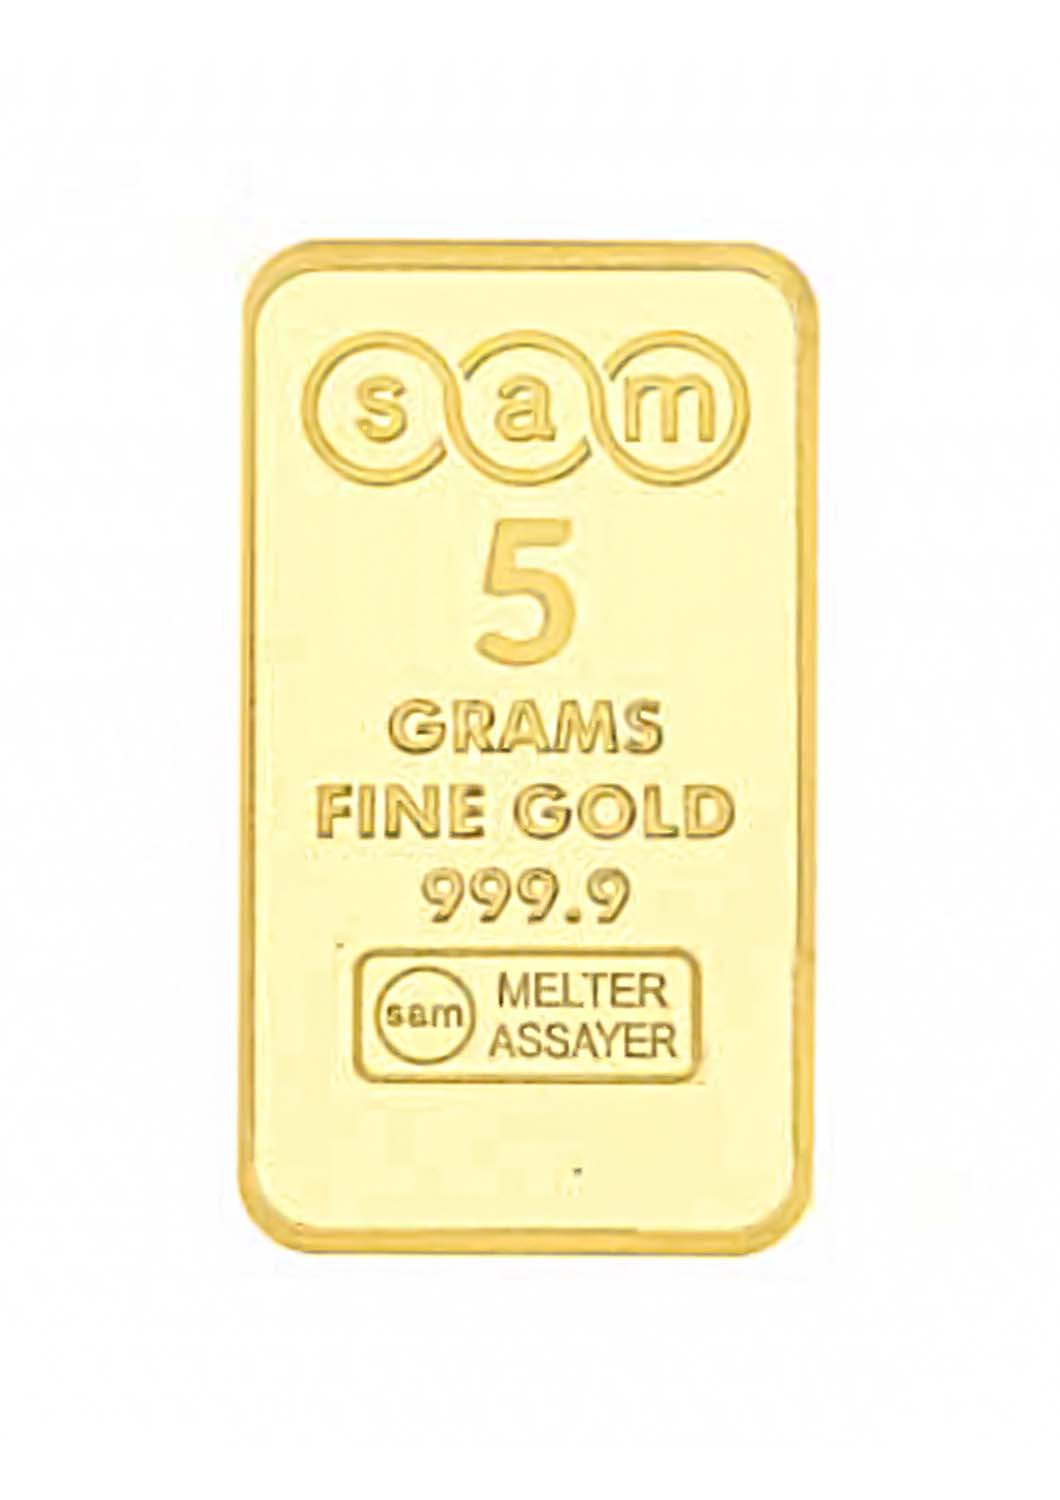 Sam Gold Bar 5 grams of pure gold, purity 999.9 - 5 grams - Saleh Sallom